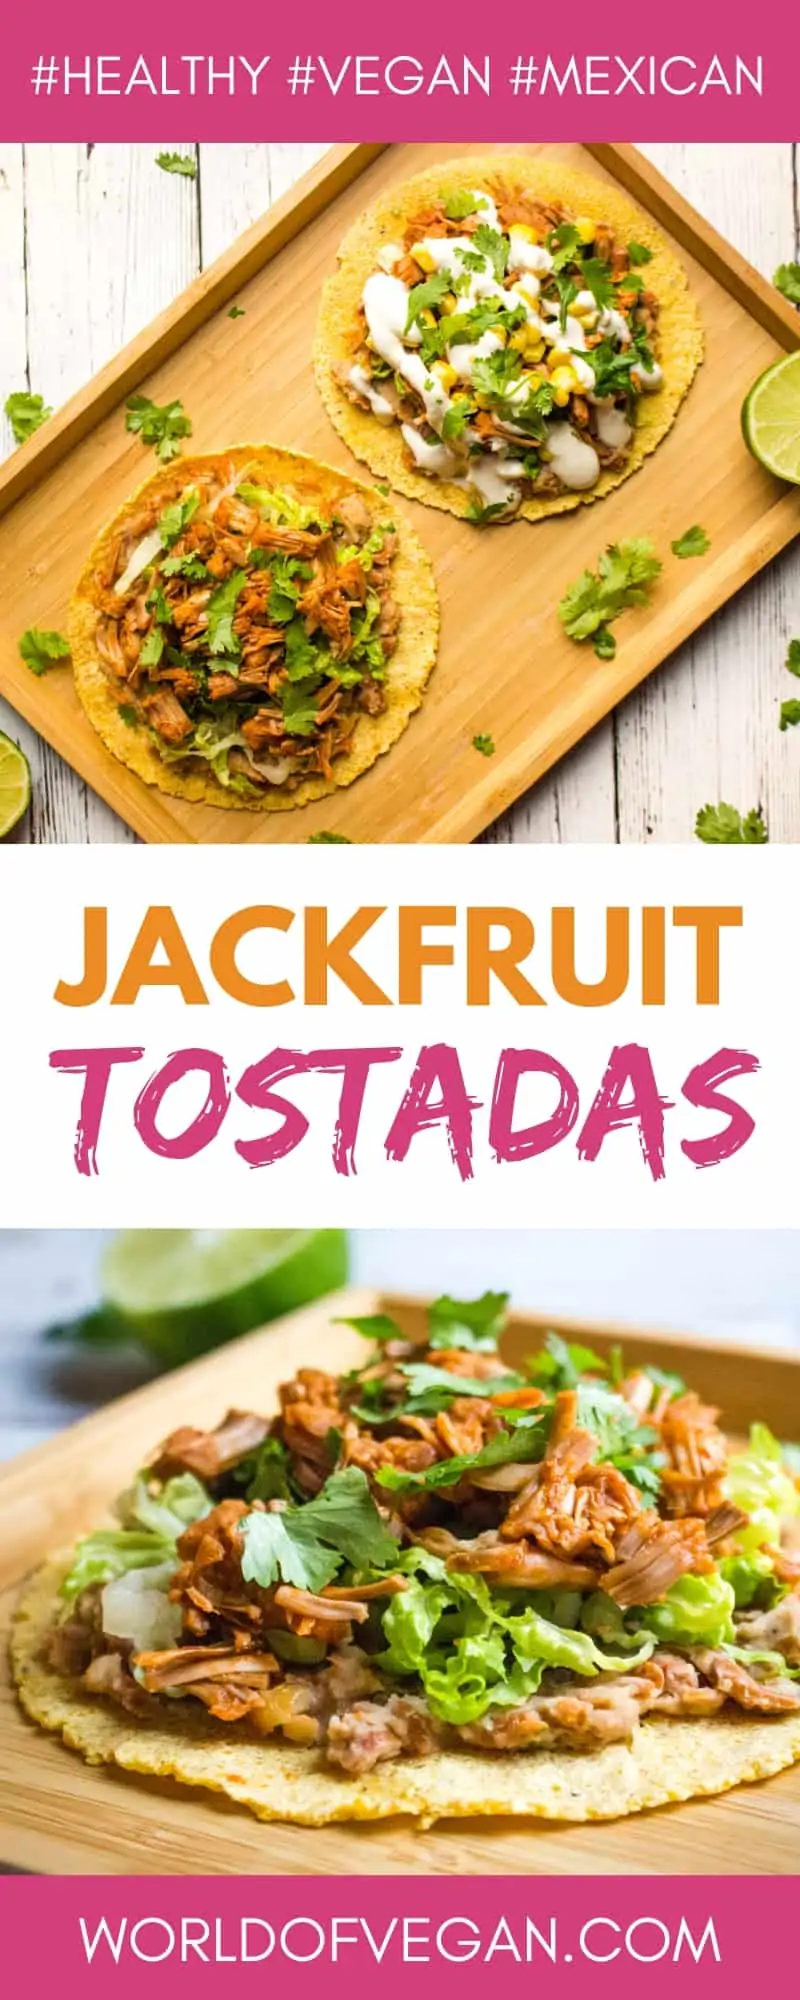 Jackfruit Tostadas | Vegan Pulled Pork | WorldofVegan.com | #vegan #recipe #tostada #jackfruit #pork #worldofvegan